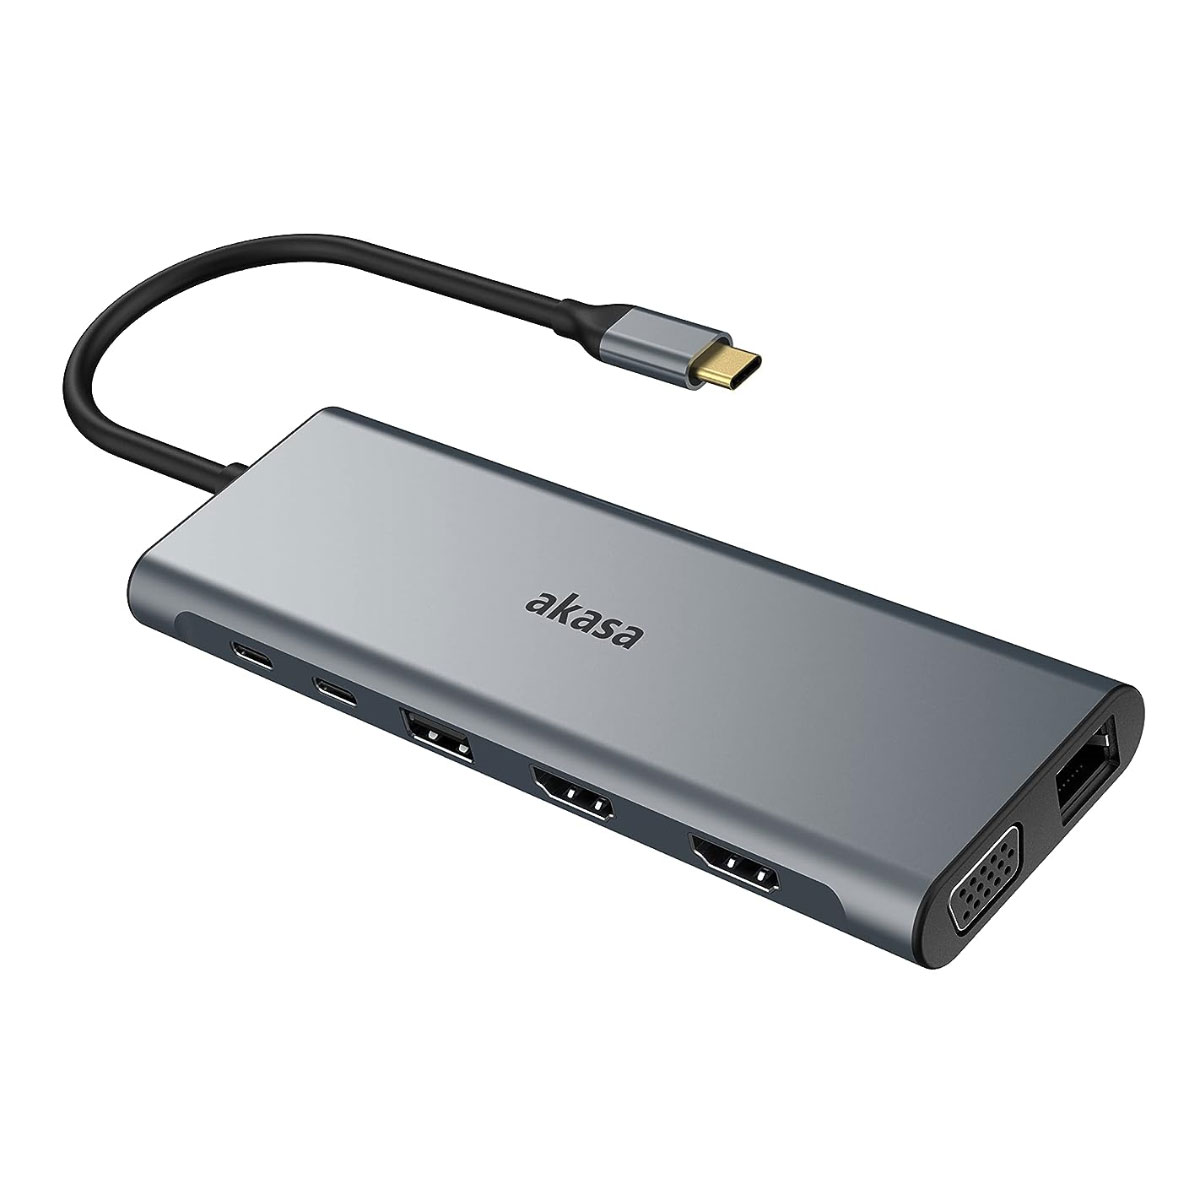 Adaptador Conversor USB-C para 2 HDMI 4K - VGA - 5 Portas USB - Leitor de Cartão - USB-C PD - RJ45 - P3 - Akasa AK-CBCA28-18BK